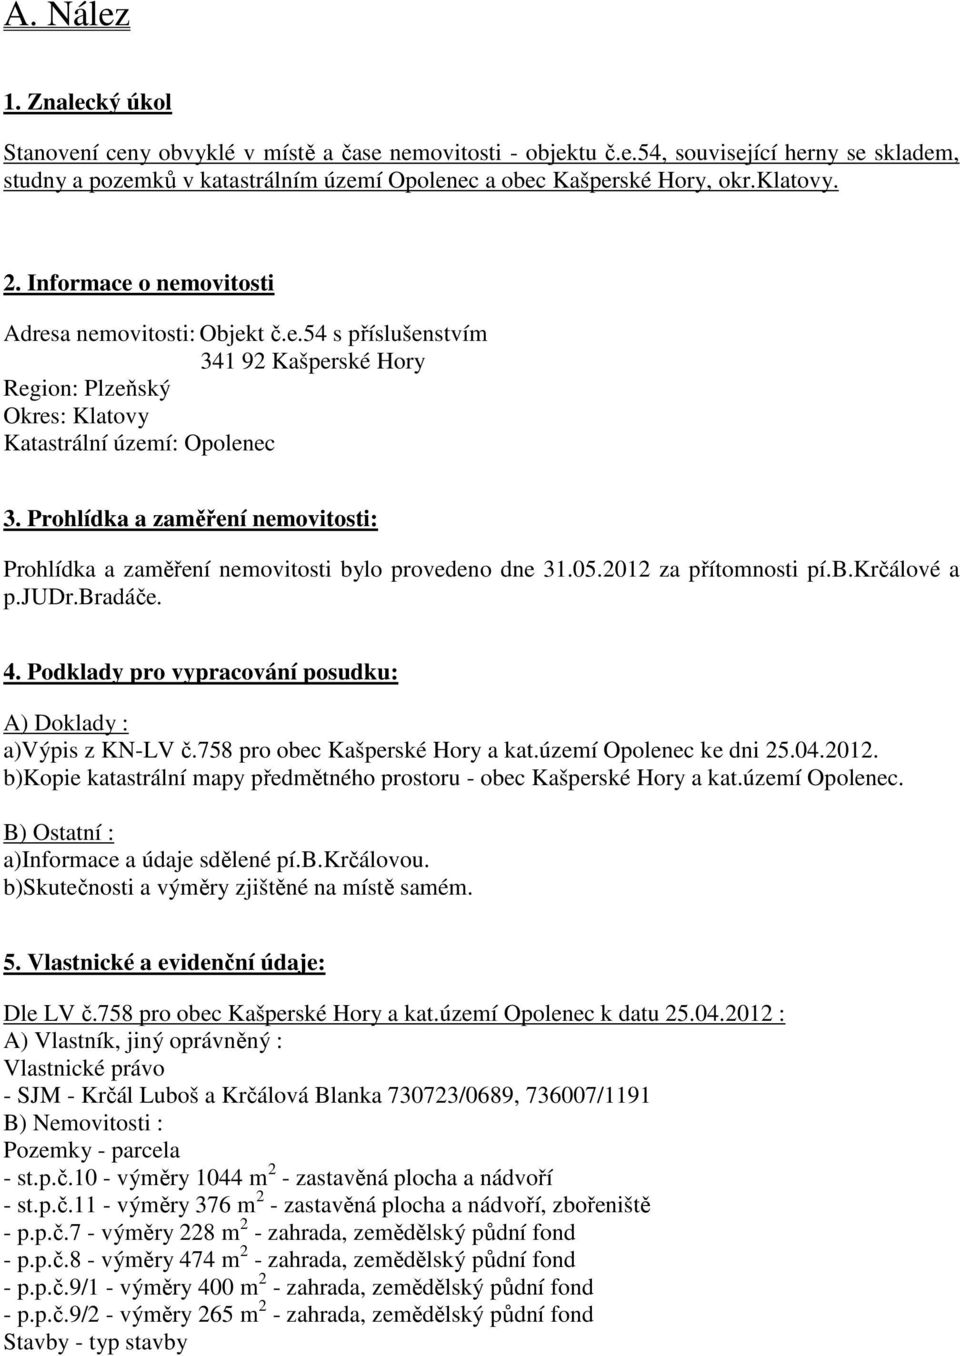 Prohlídka a zaměření nemovitosti: Prohlídka a zaměření nemovitosti bylo provedeno dne 31.05.2012 za přítomnosti pí.b.krčálové a p.judr.bradáče. 4.